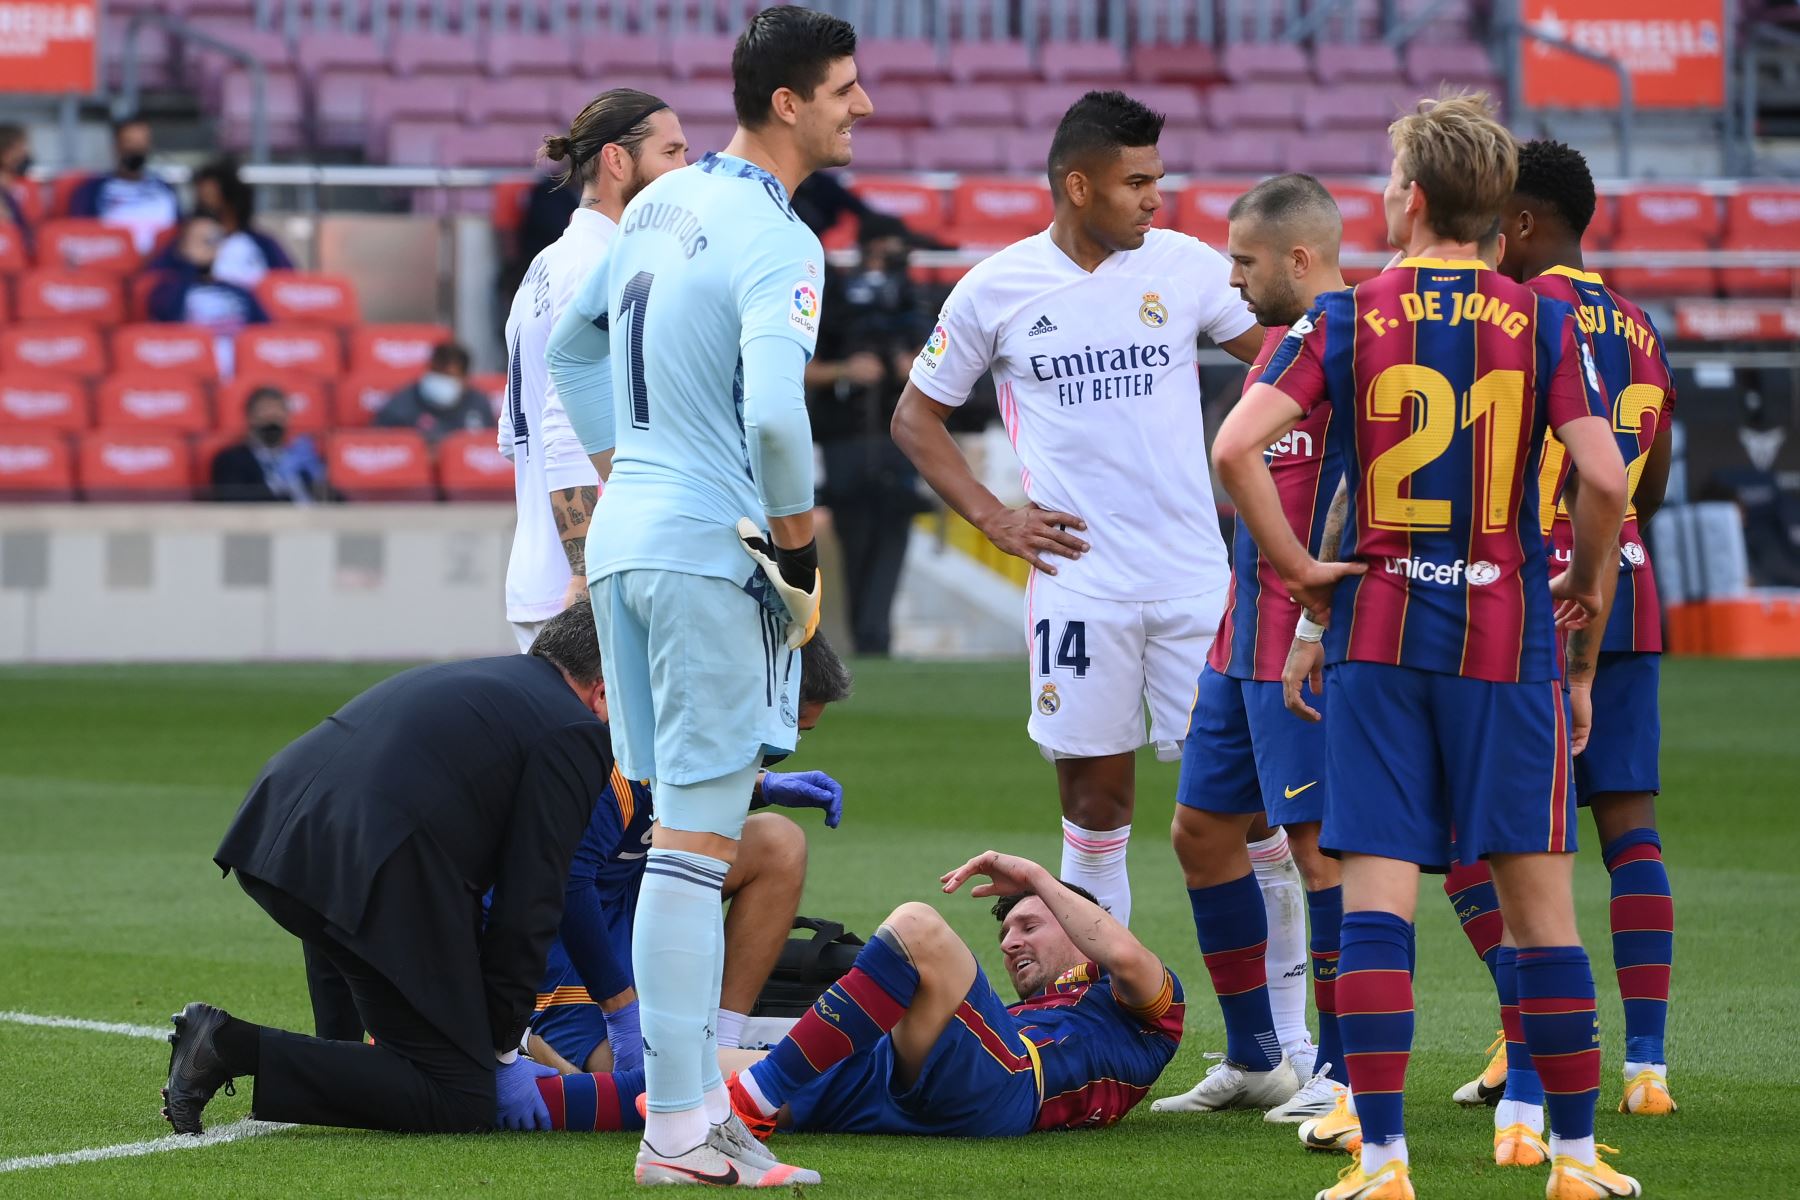 El delantero argentino del Barcelona Lionel Messi recibe atención médica tras caer durante el partido de fútbol de la Liga española. Foto: AFP